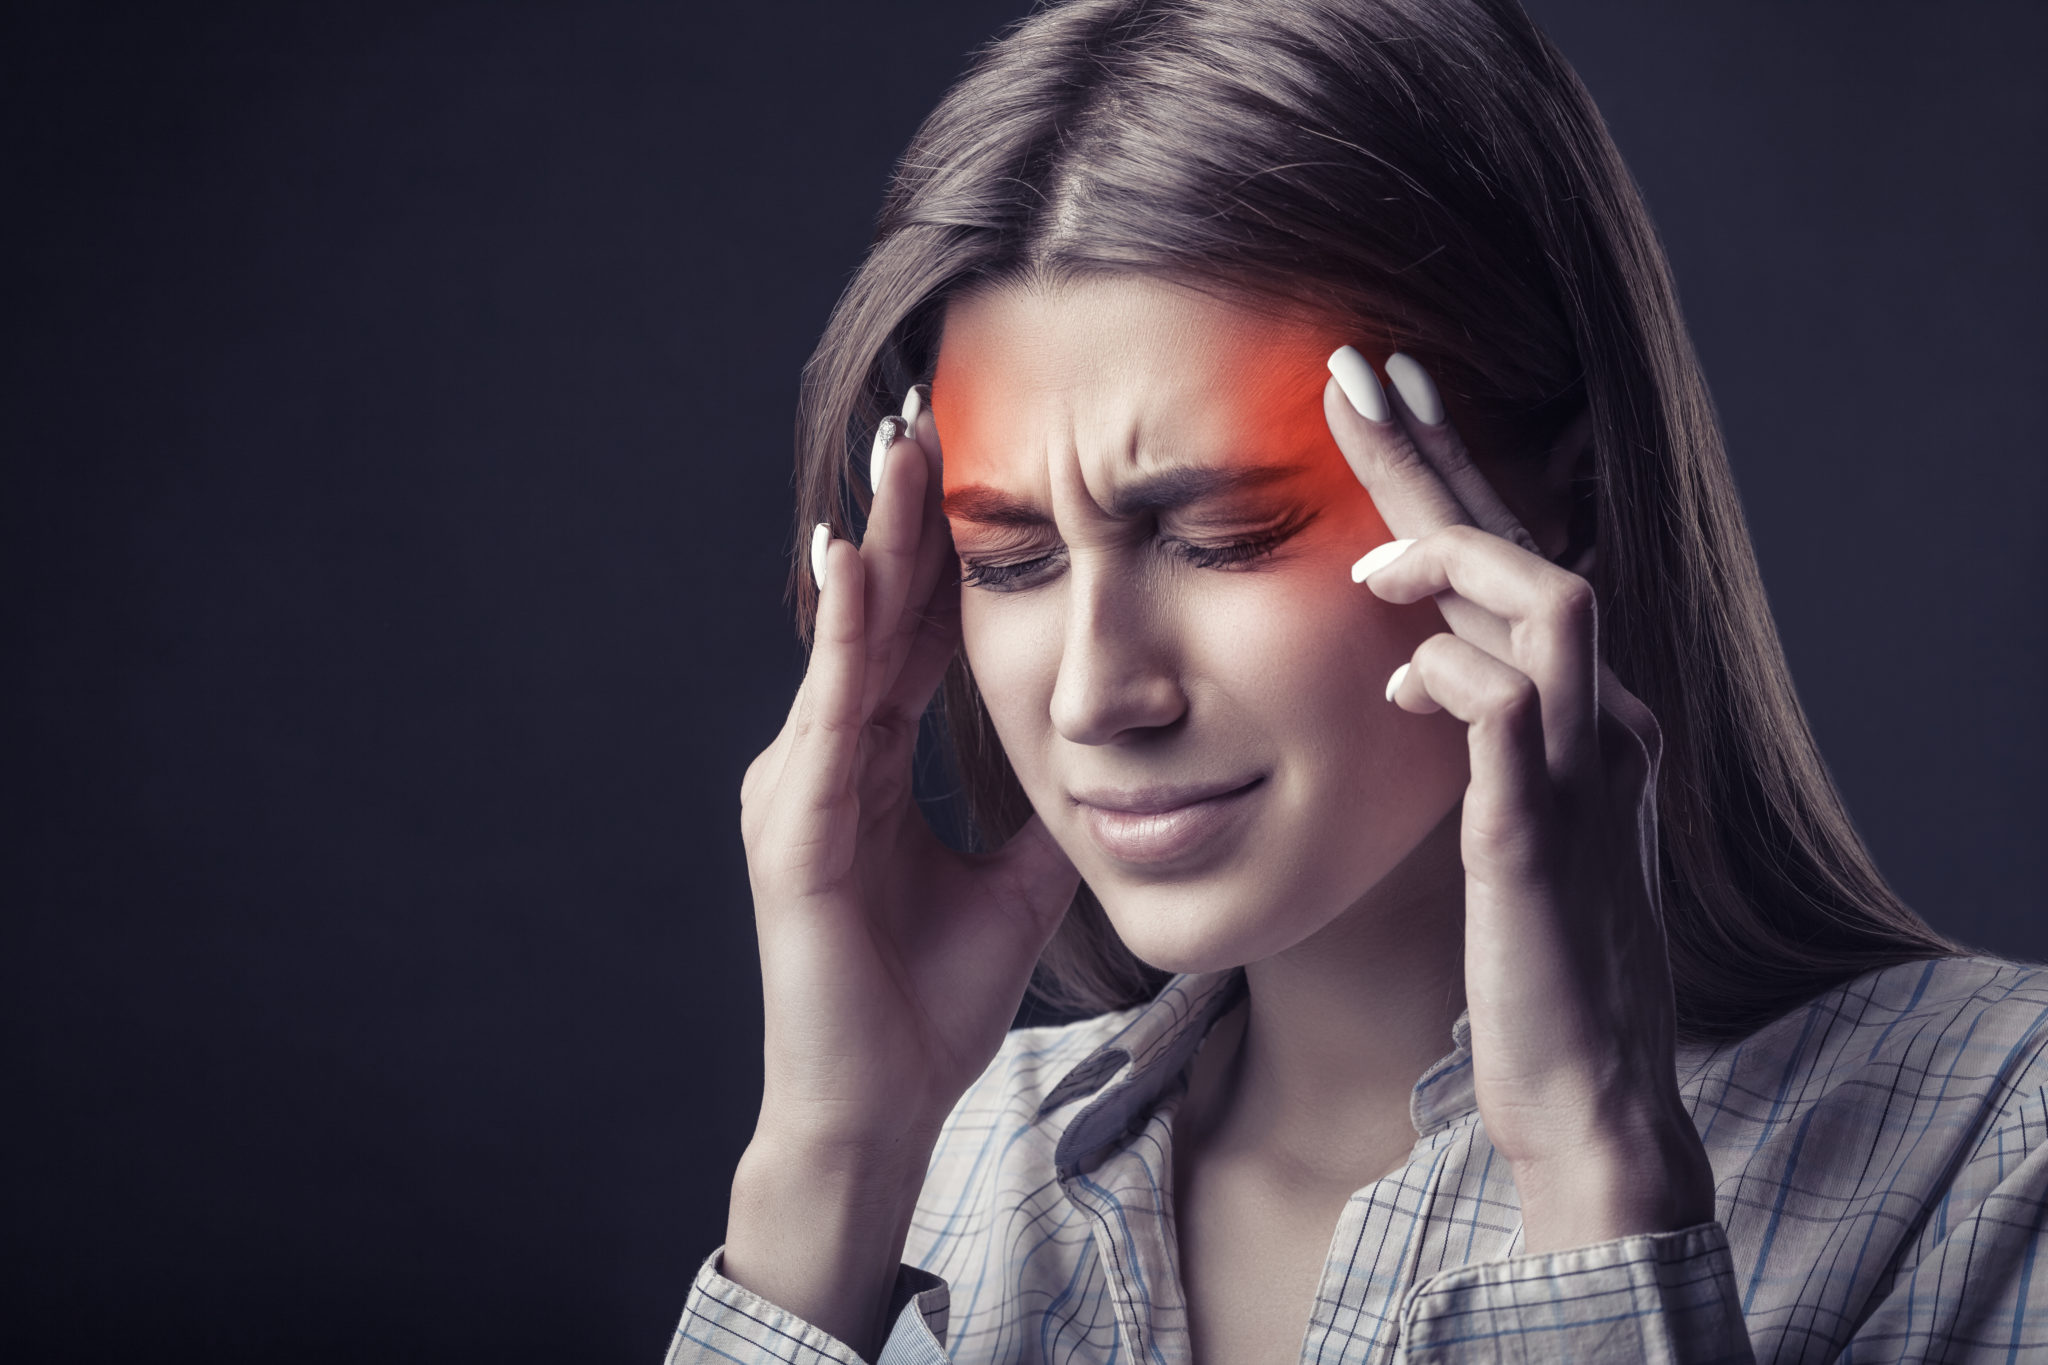 Ayurvedic treatment for Migraine